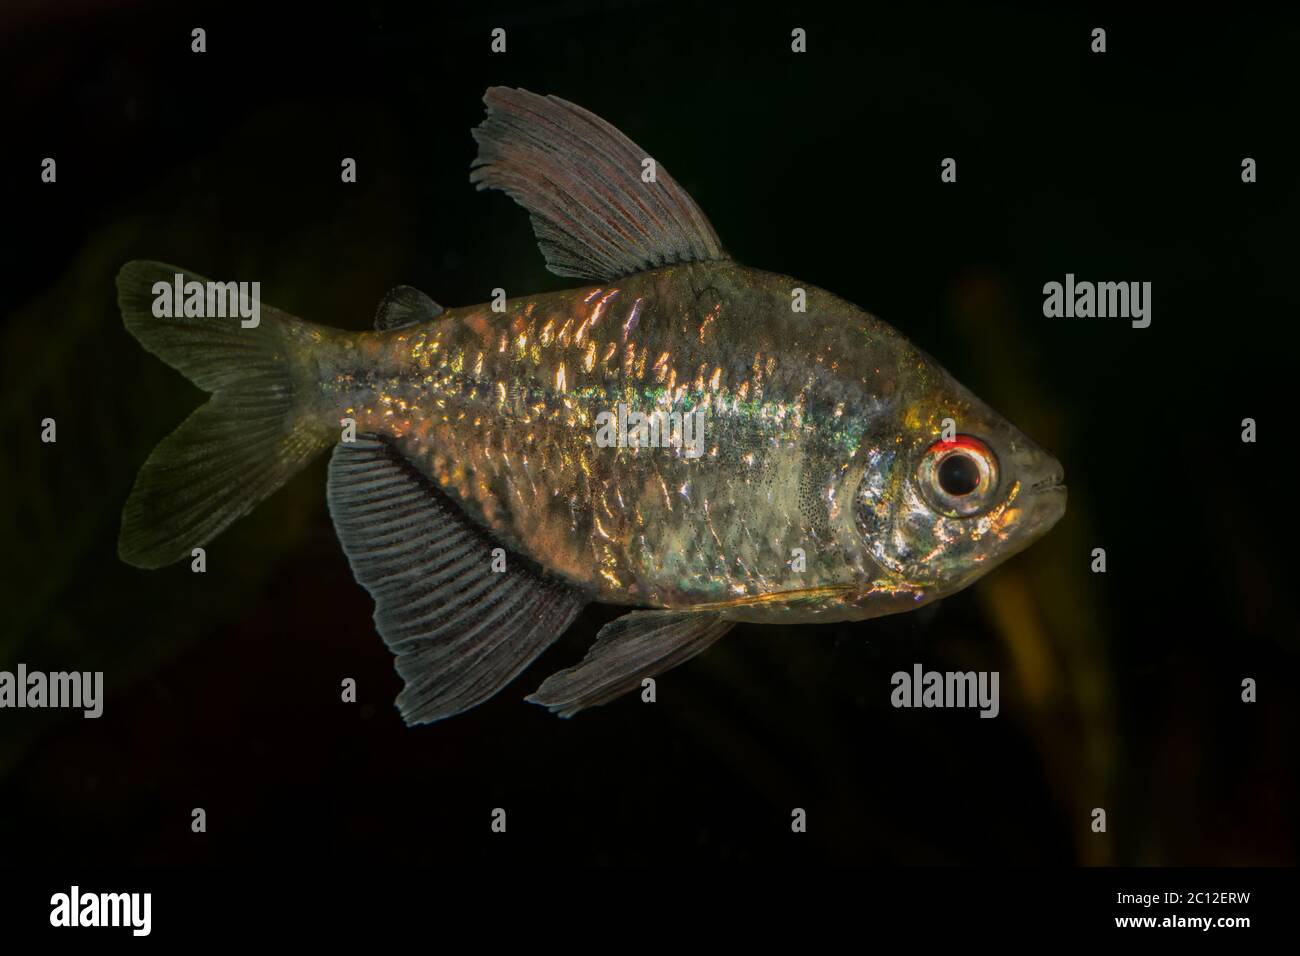 Portrait of tetra fish (Moenkhausia pittieri) in aquarium Stock Photo